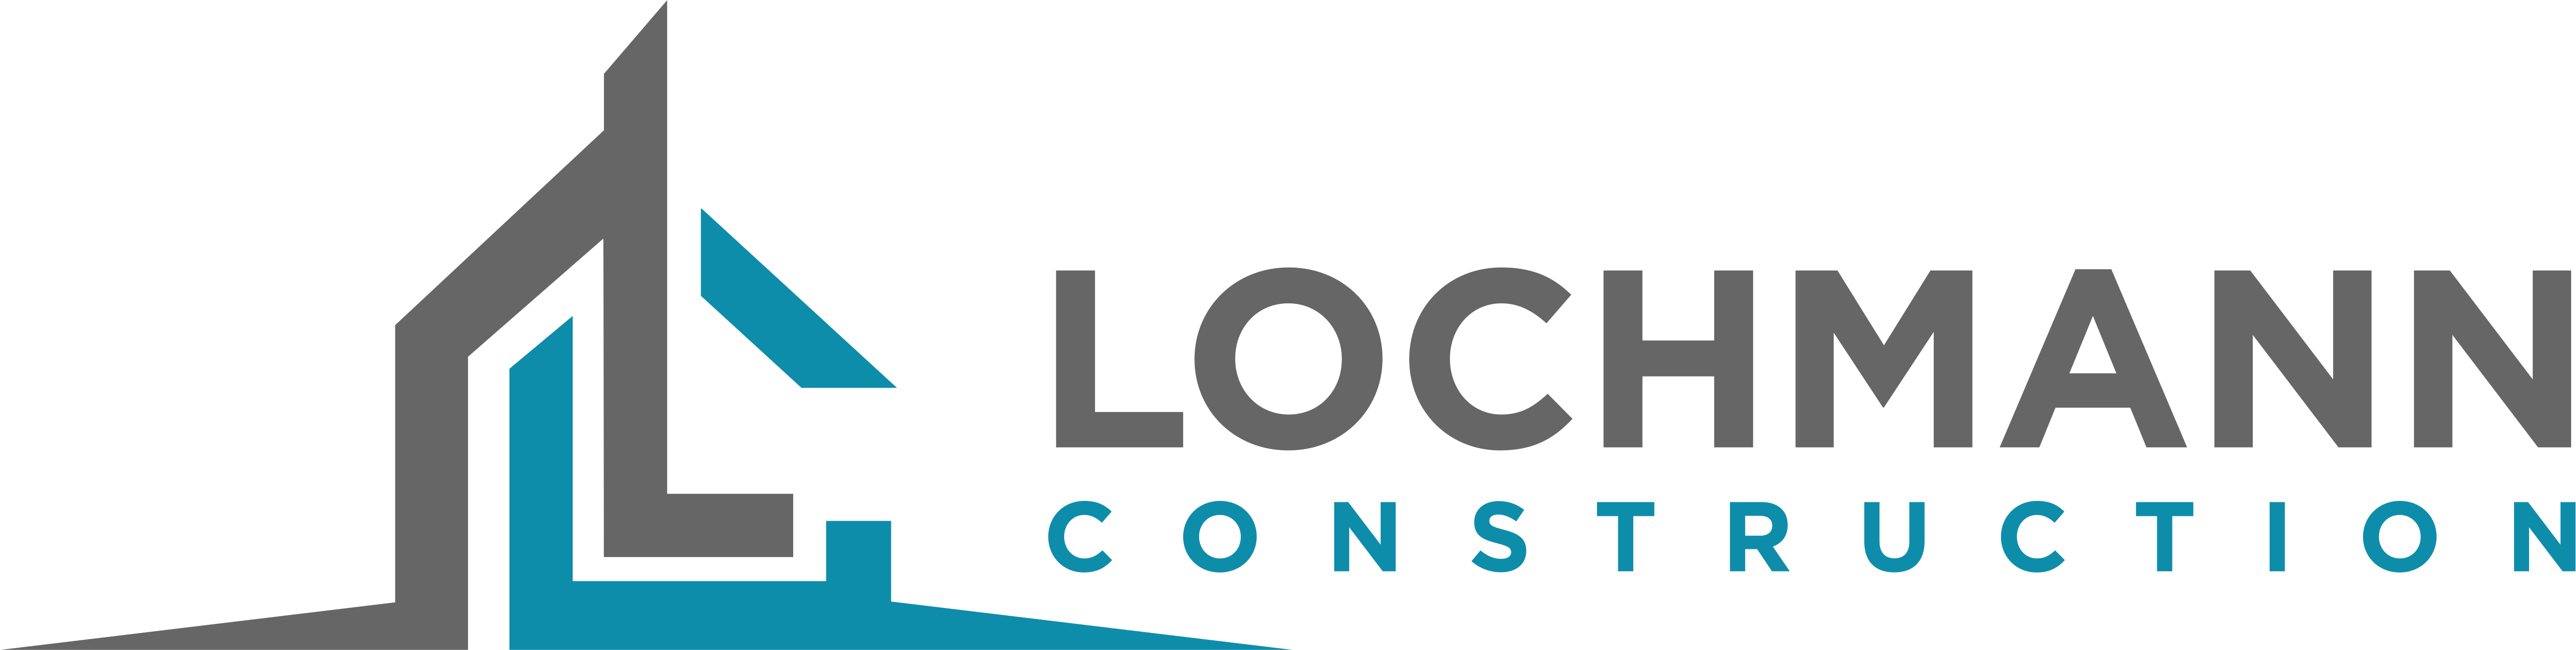 Lochmann Construction logo